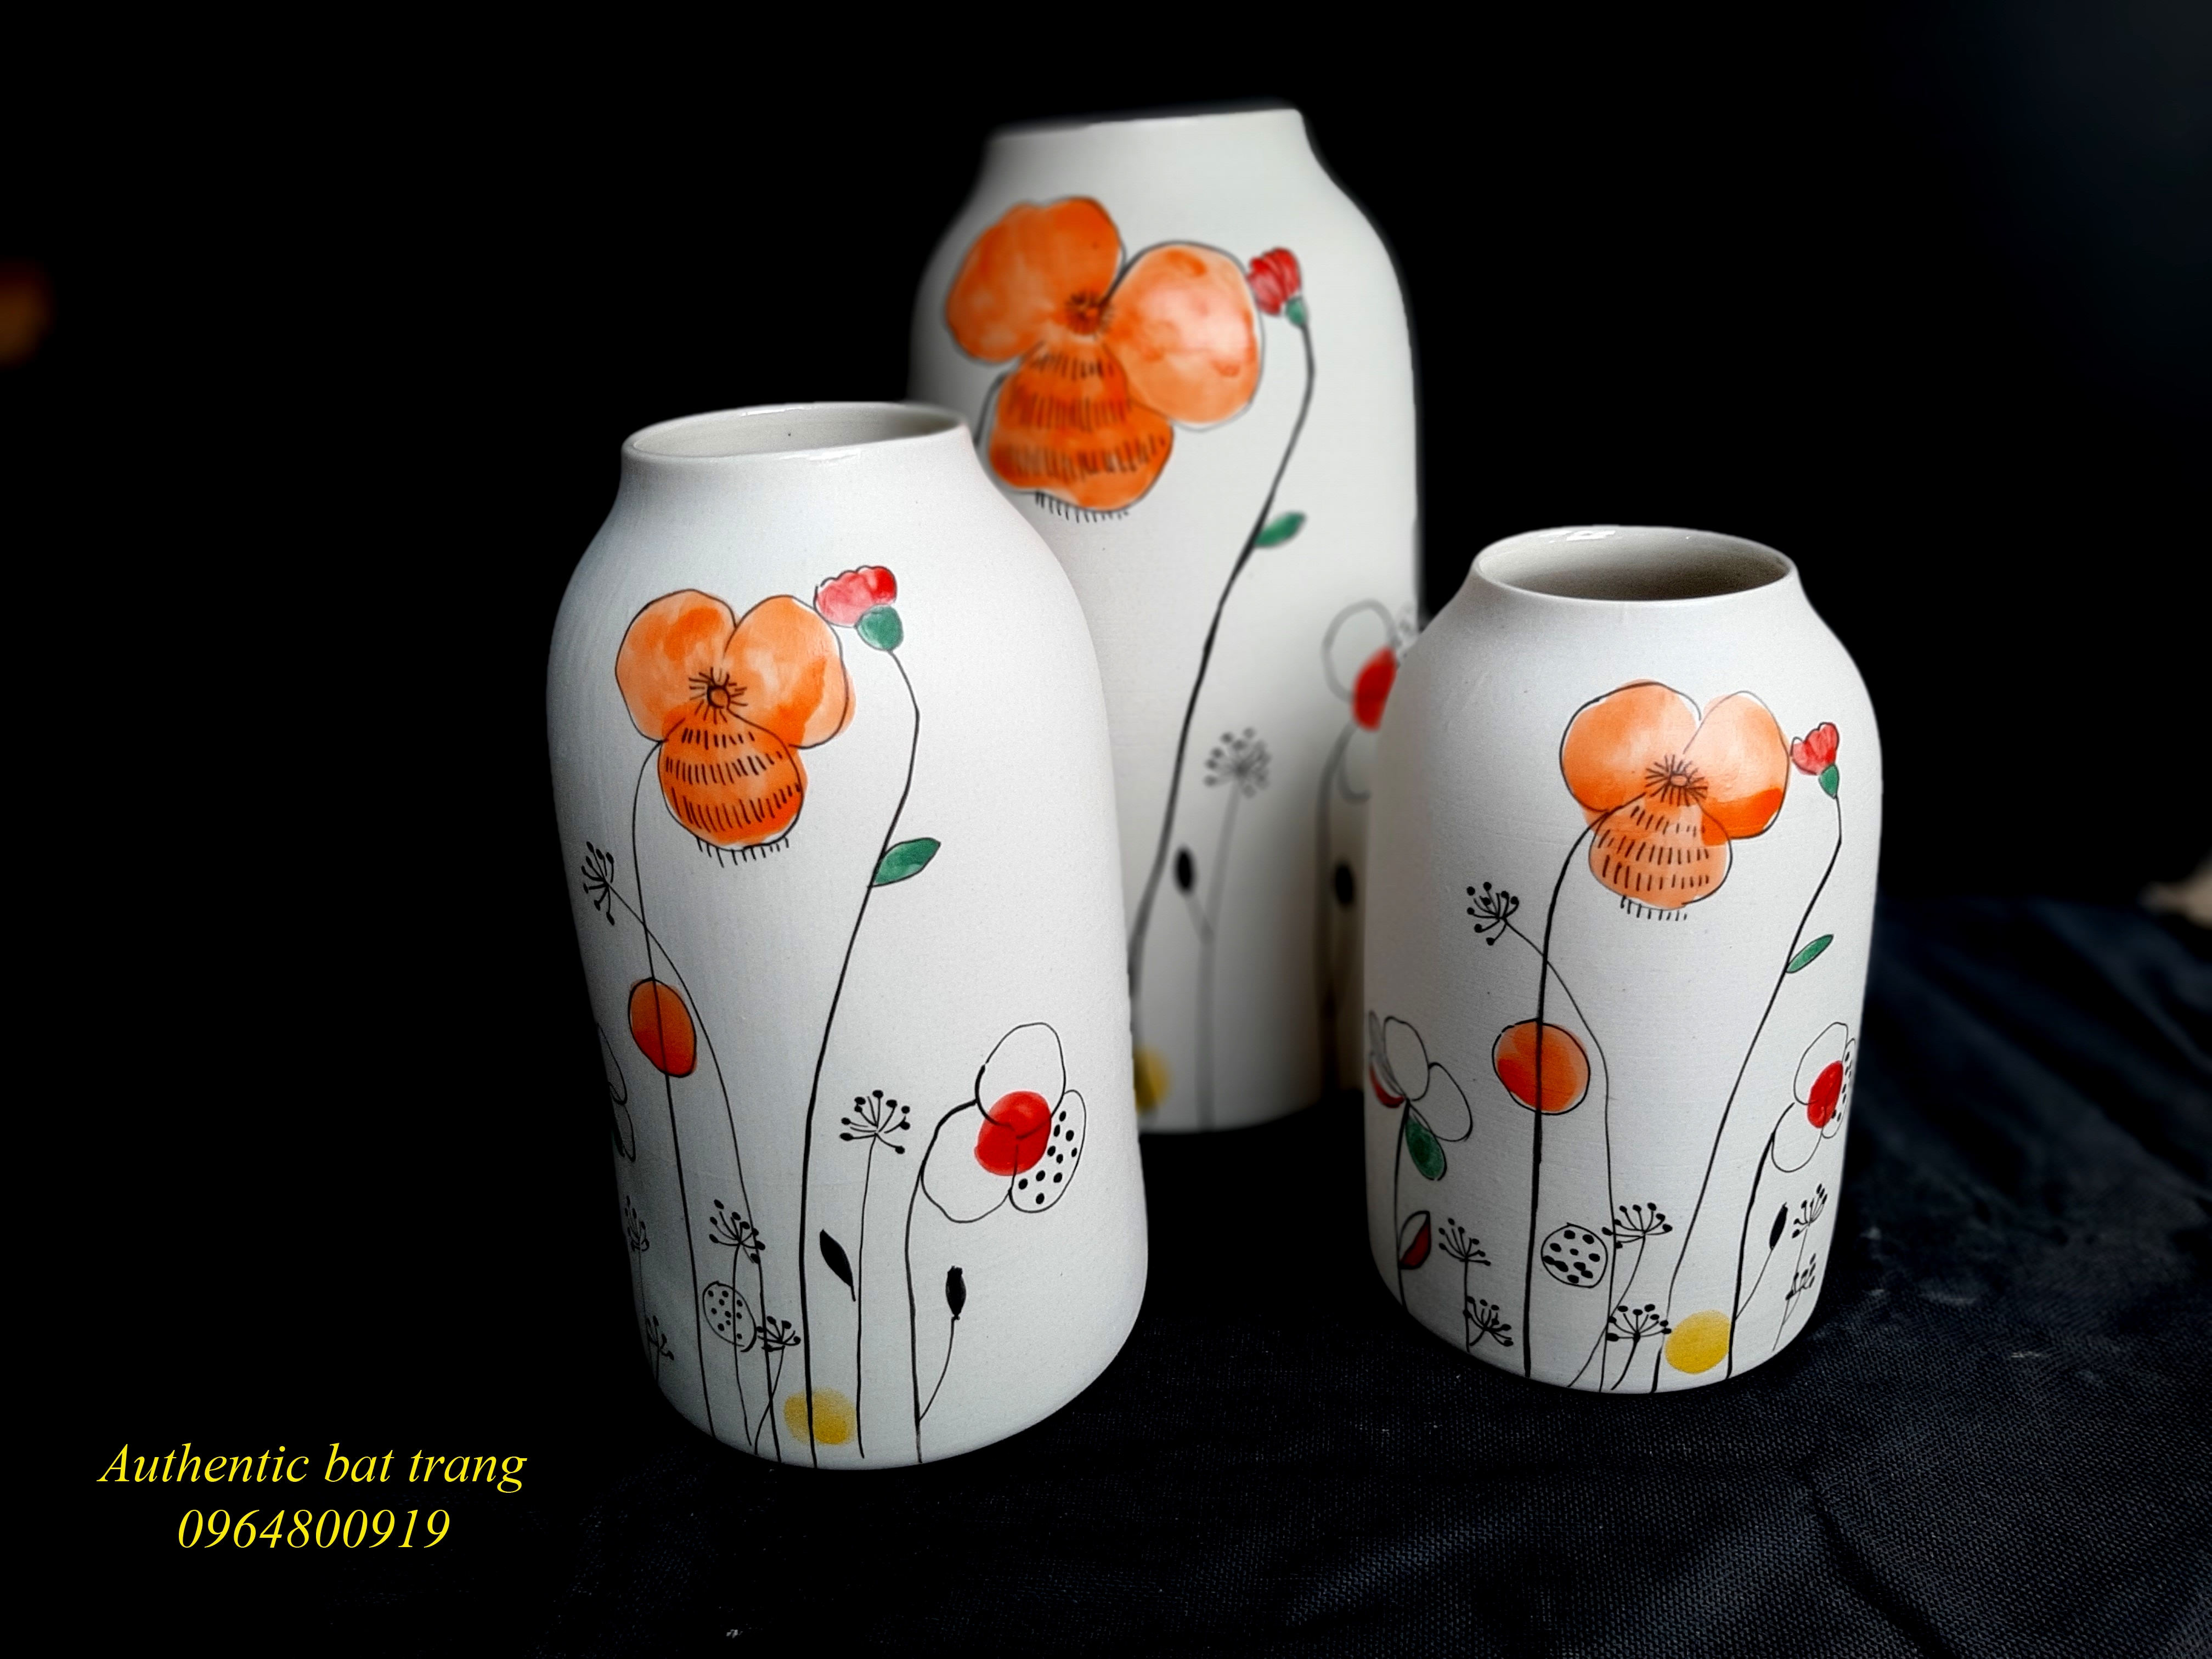 Ceramics vases home decor/ Bộ bình gốm trụ vẽ hoa cho trang trí nhà cửa sản xuất tại xưởng Authentic bat trang